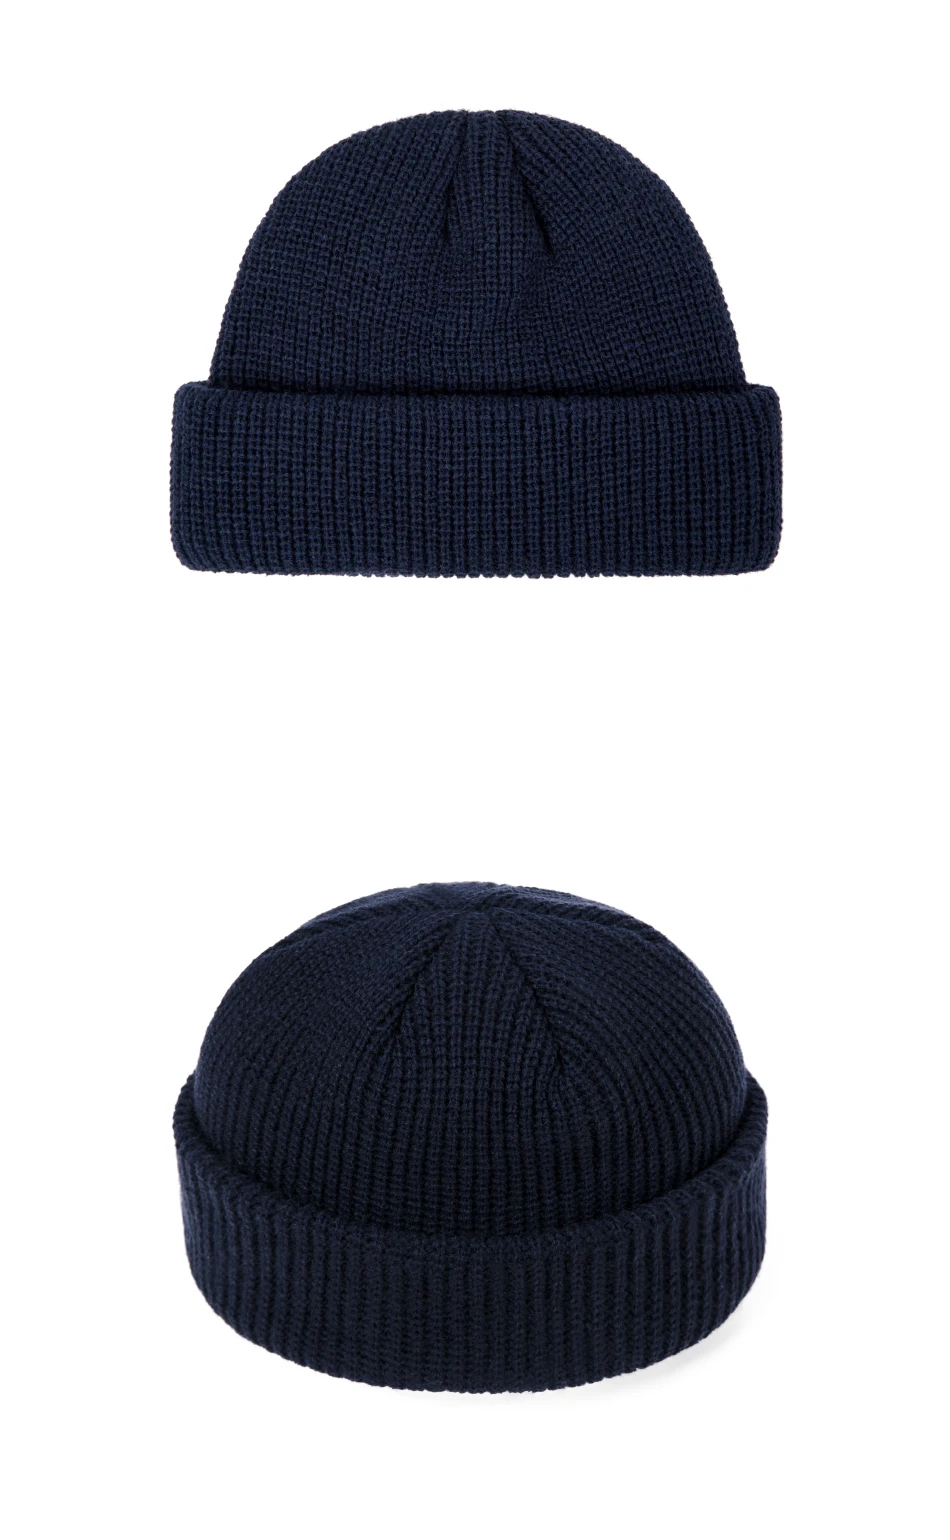 DMROLES Новая мода родитель-детский головной убор вязаная зимняя детская шапка для мальчиков и девочек вязаная теплая шапка для взрослых и детей Универсальная